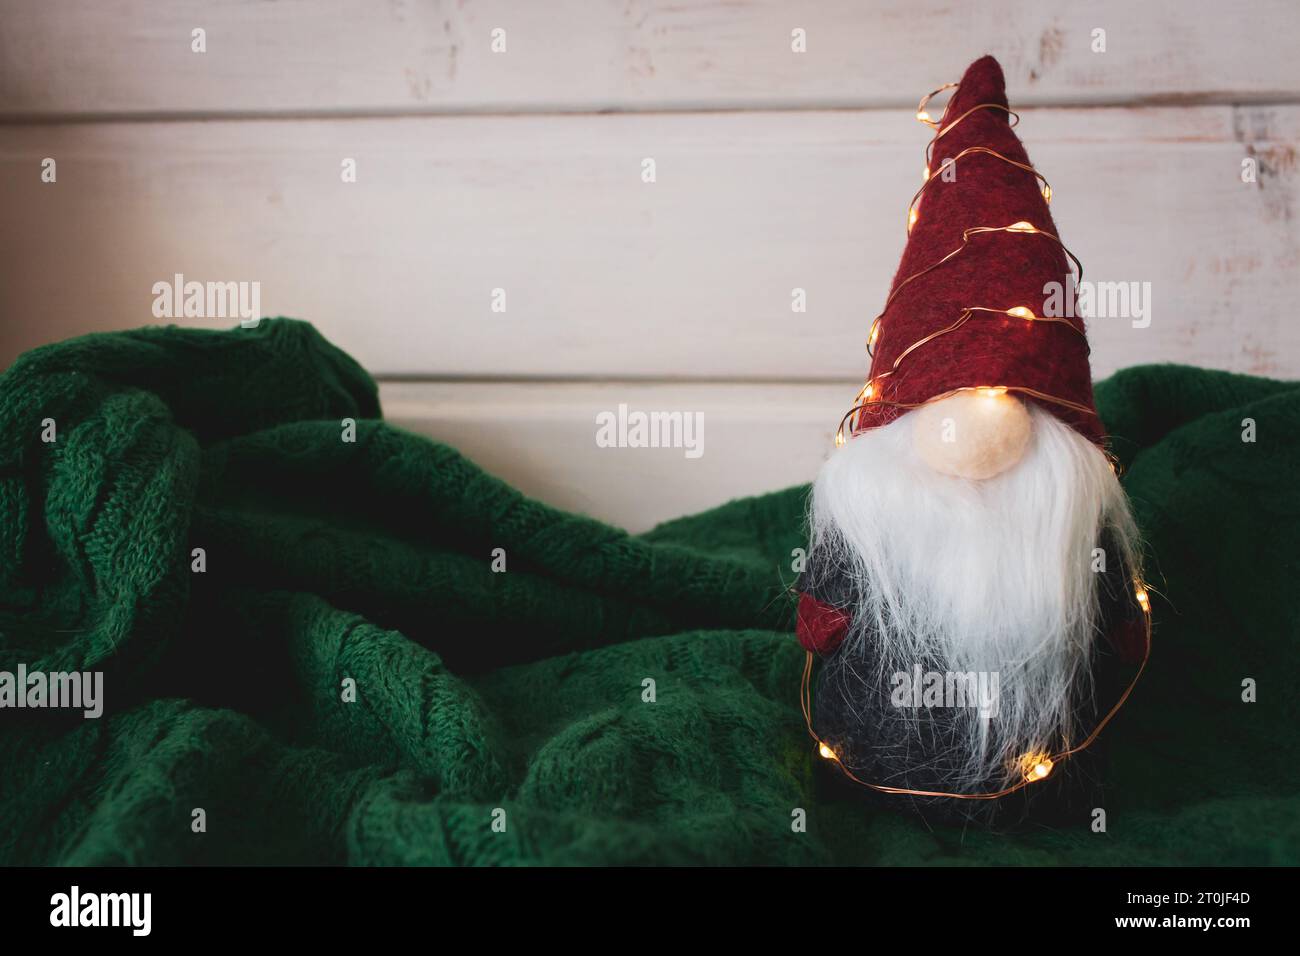 Jouet du Père Noël avec guirlande sur fond tricoté vert. Mignon nain avec chapeau conique rouge dans un design scandinave. Décoration de Noël. Ambiance de Noël Banque D'Images